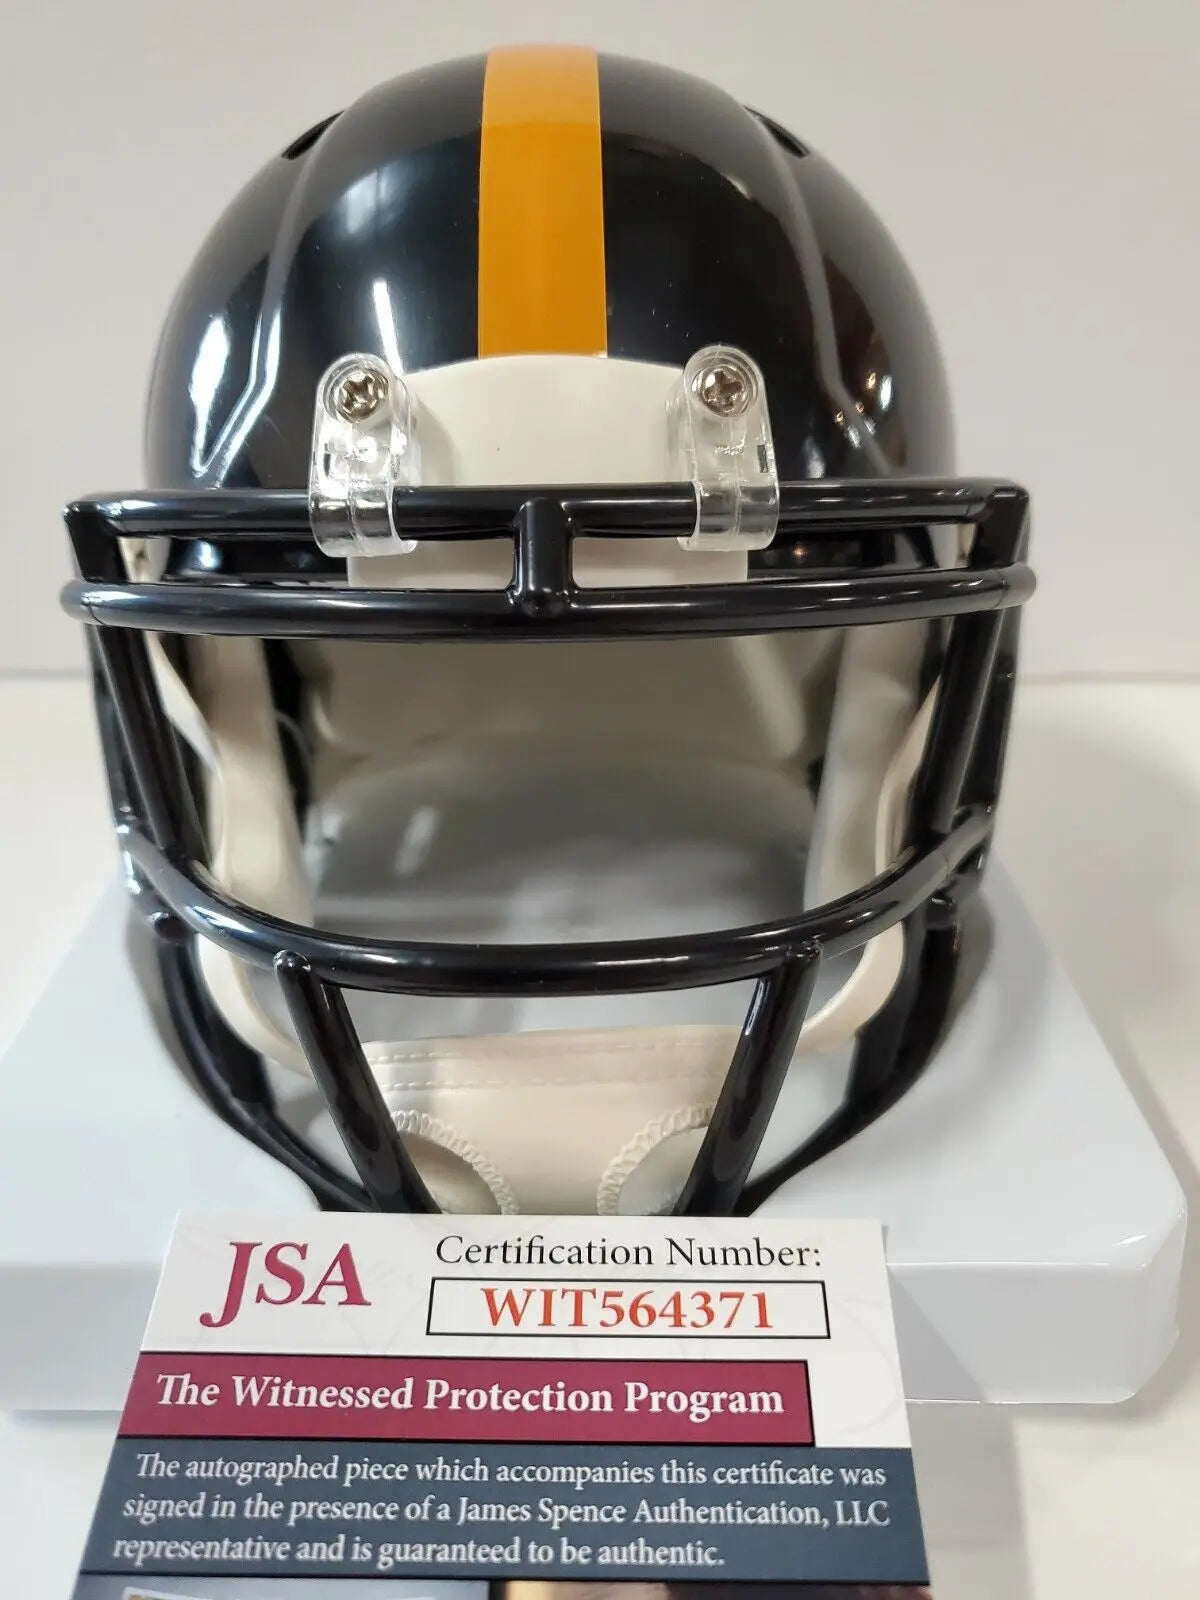 Pittsburgh Steelers Brett Keisel Autographed Signed Mini Helmet Jsa Co –  MVP Authentics